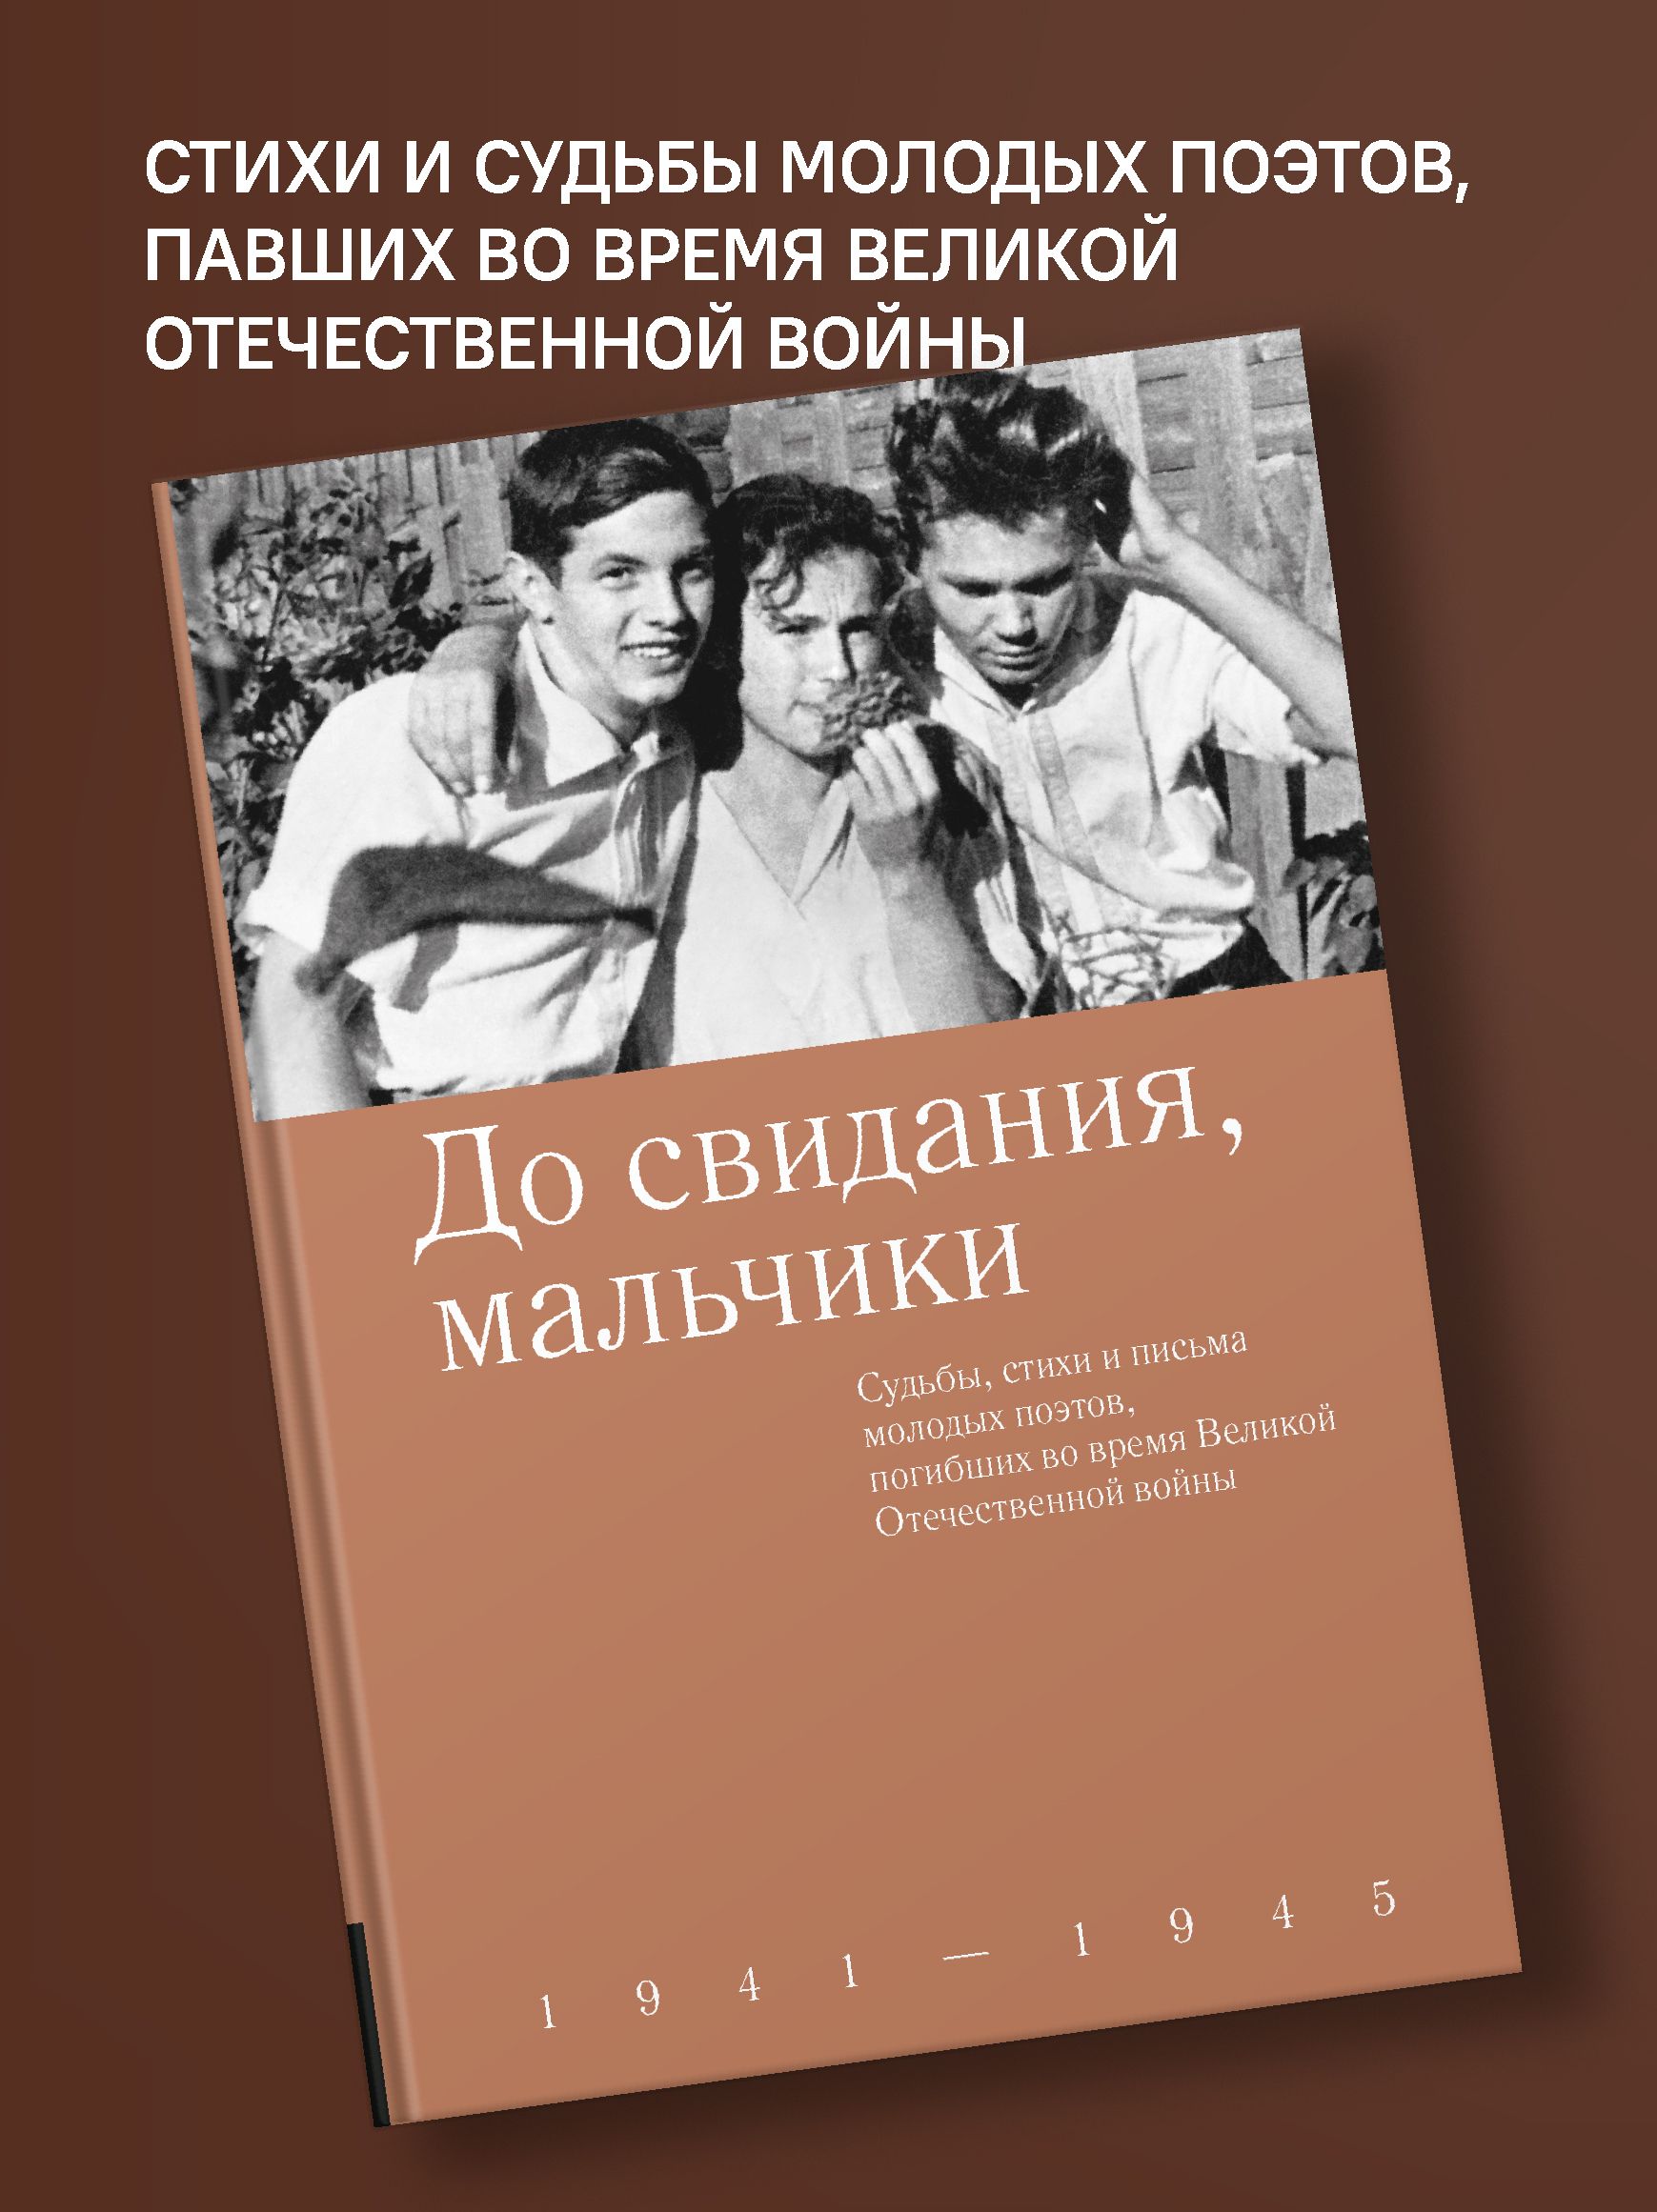 10 романов и повестей о Великой Отечественной войне